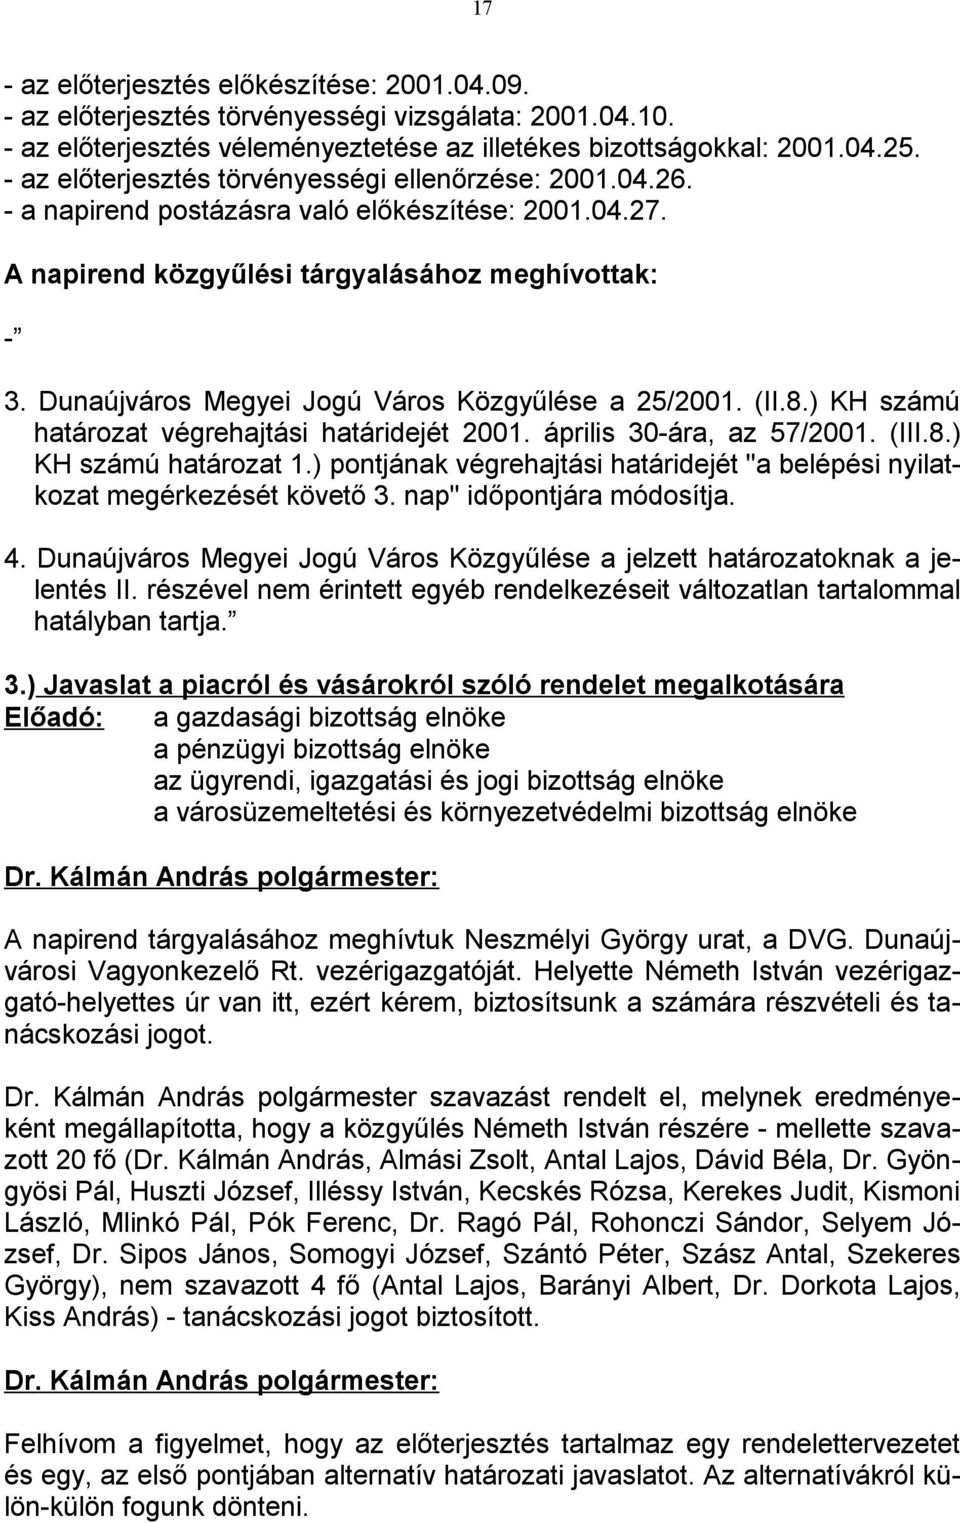 Dunaújváros Megyei Jogú Város Közgyűlése a 25/2001. (II.8.) KH számú határozat végrehajtási határidejét 2001. április 30-ára, az 57/2001. (III.8.) KH számú határozat 1.